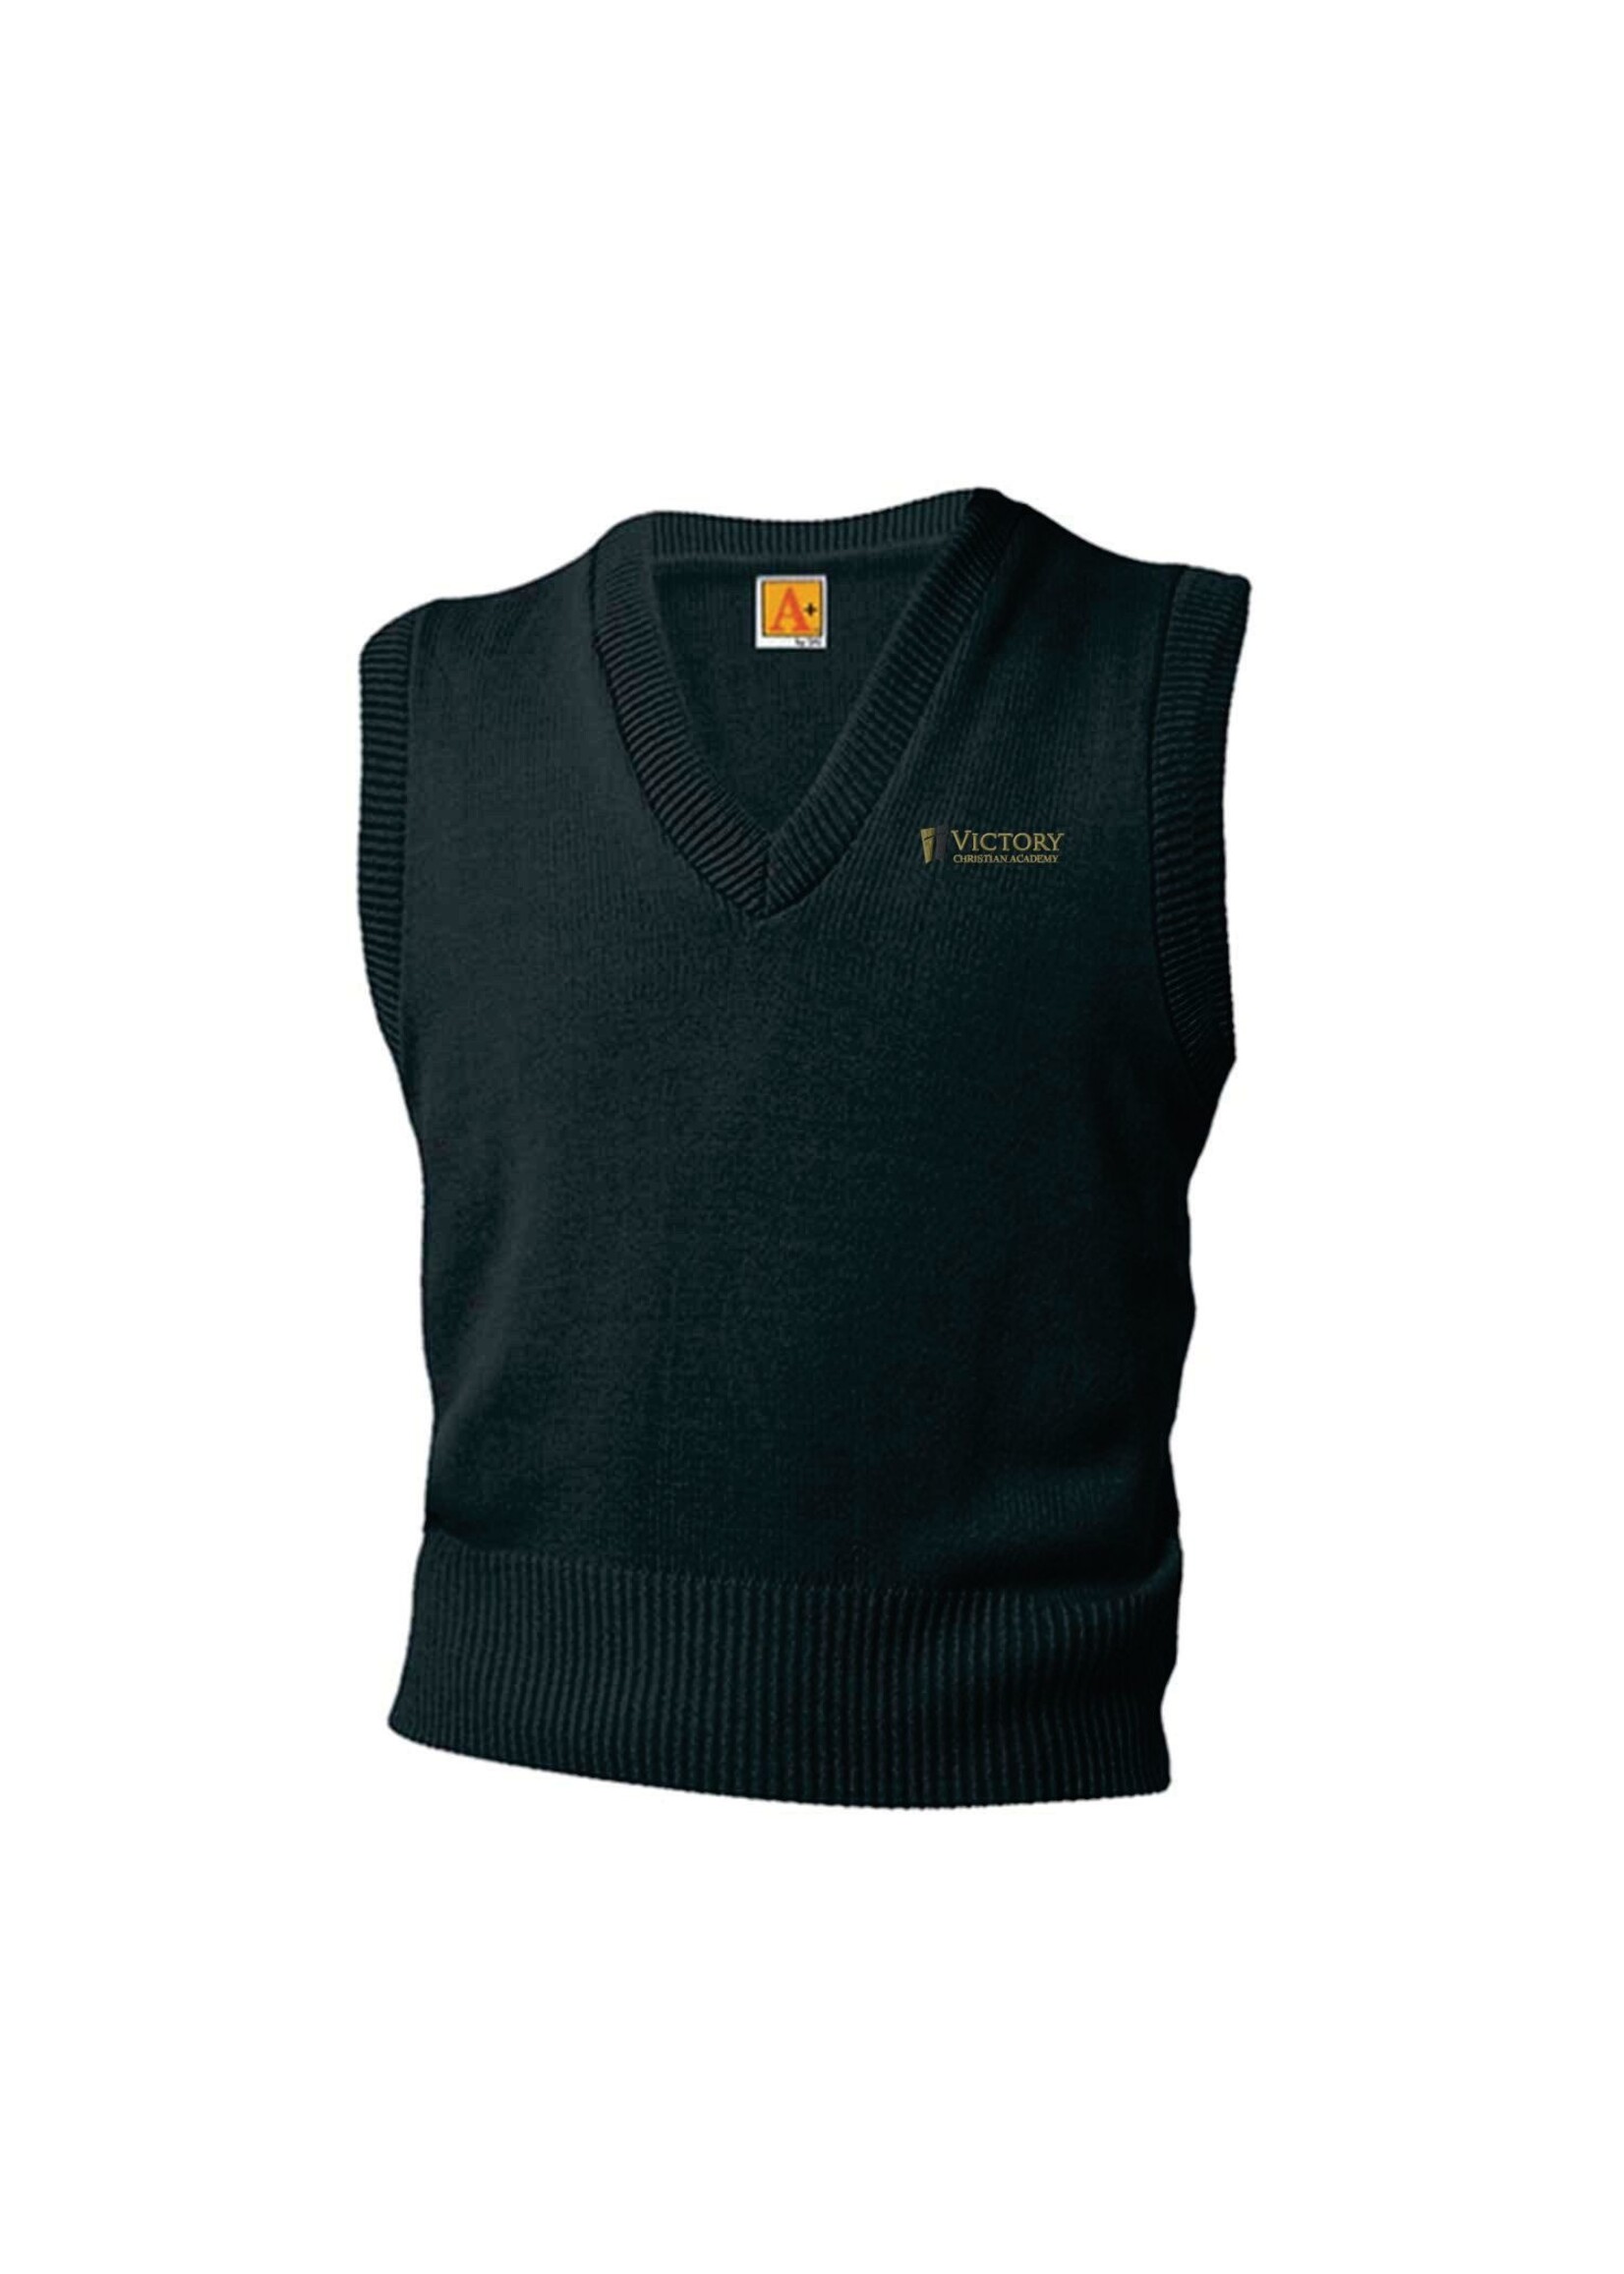 VCA V-neck sweater vest